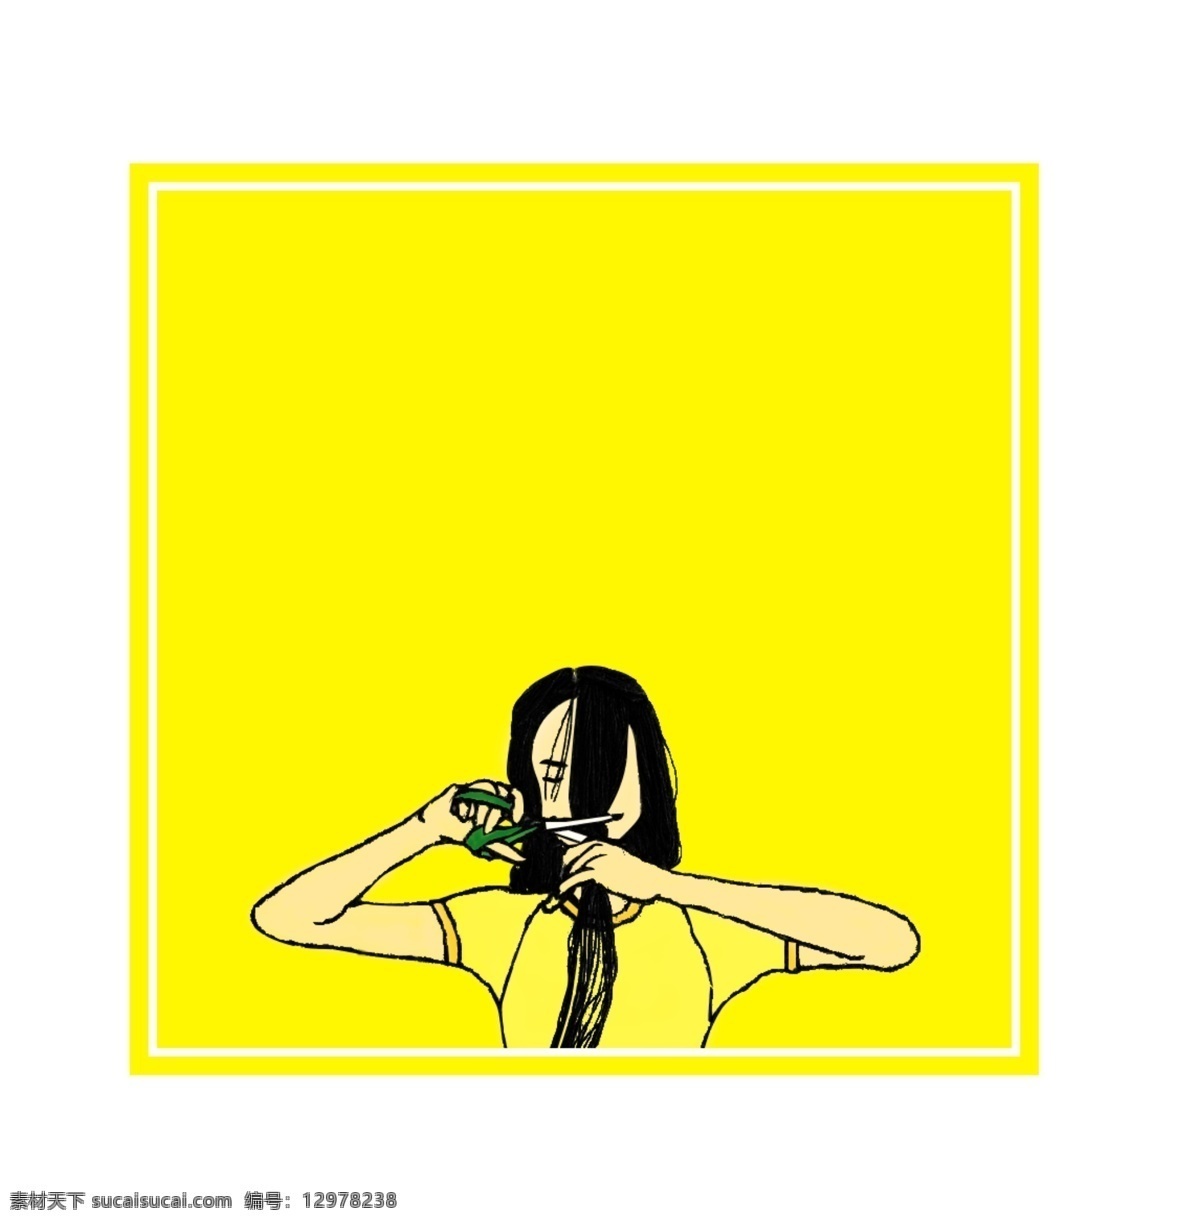 黄色 卡通 手绘 长发 美女 边框 元素 几何 正方形 女孩 剪头发